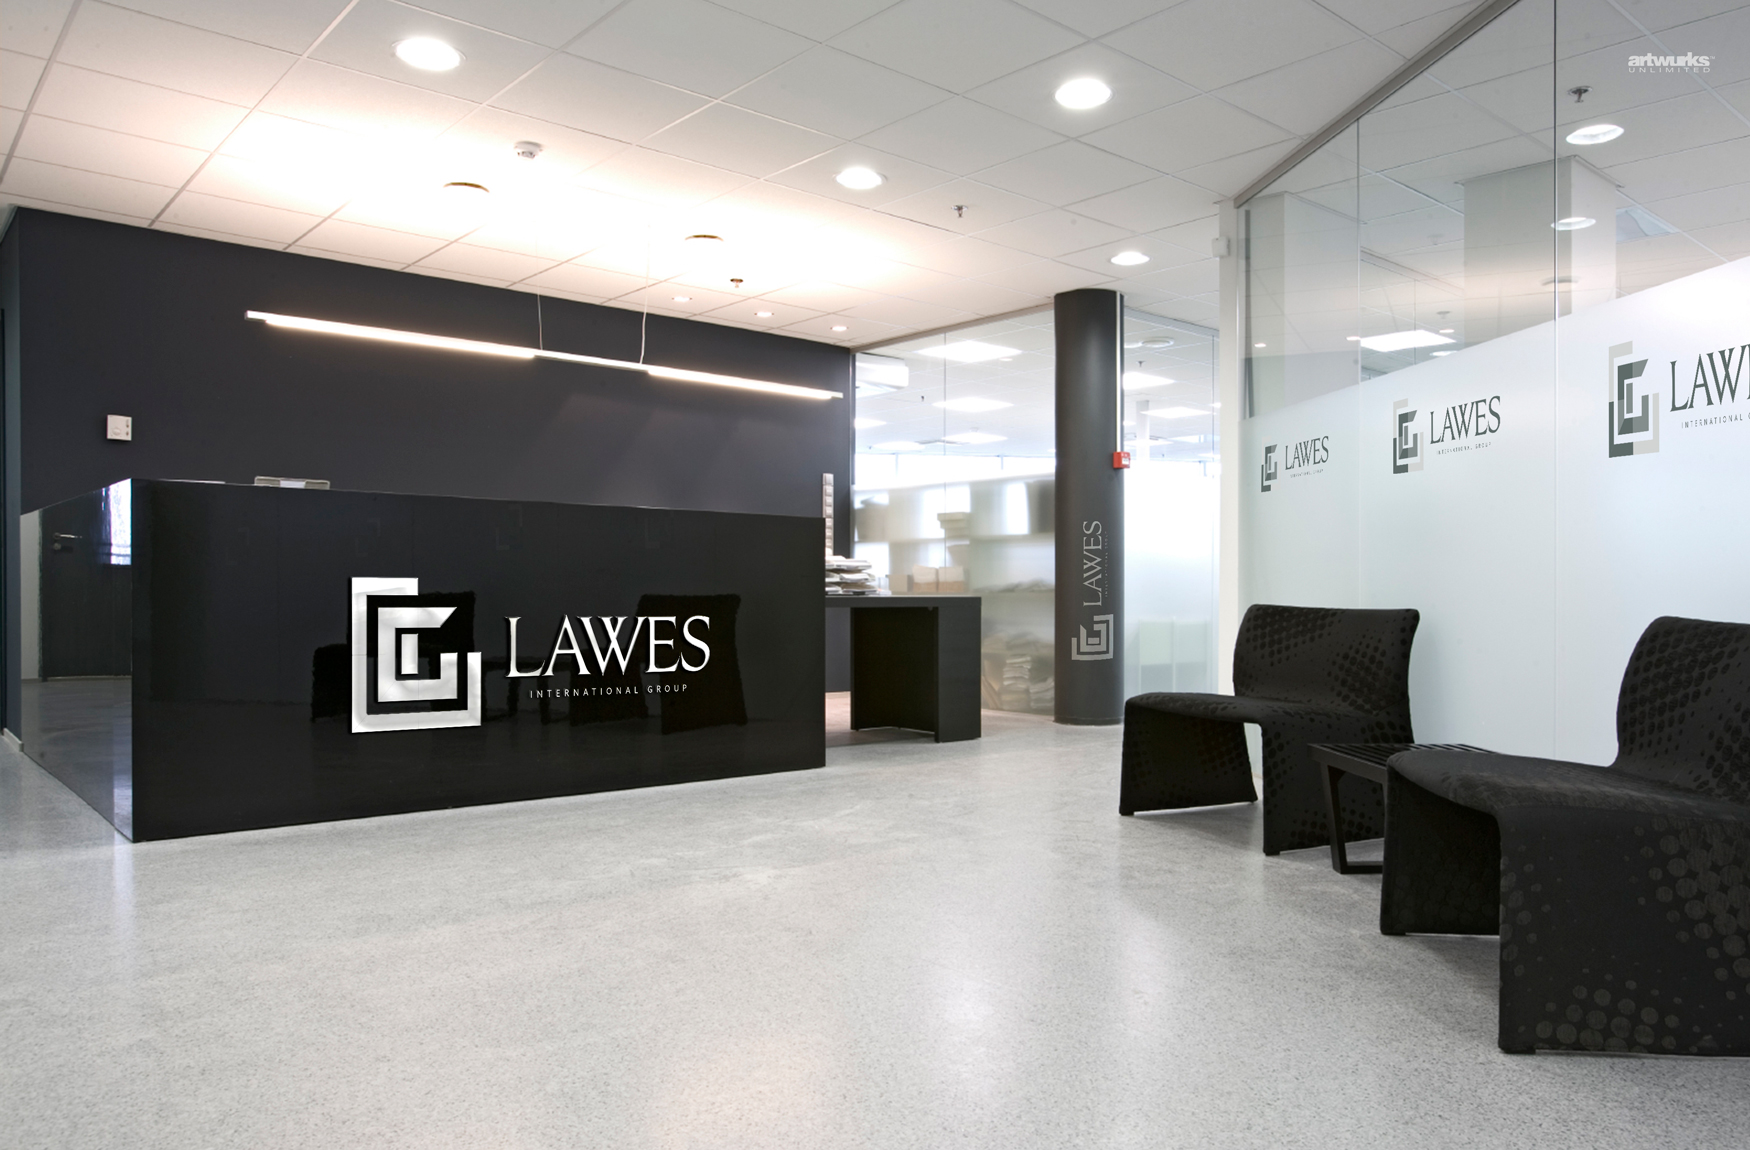 Lawes International Group Identity